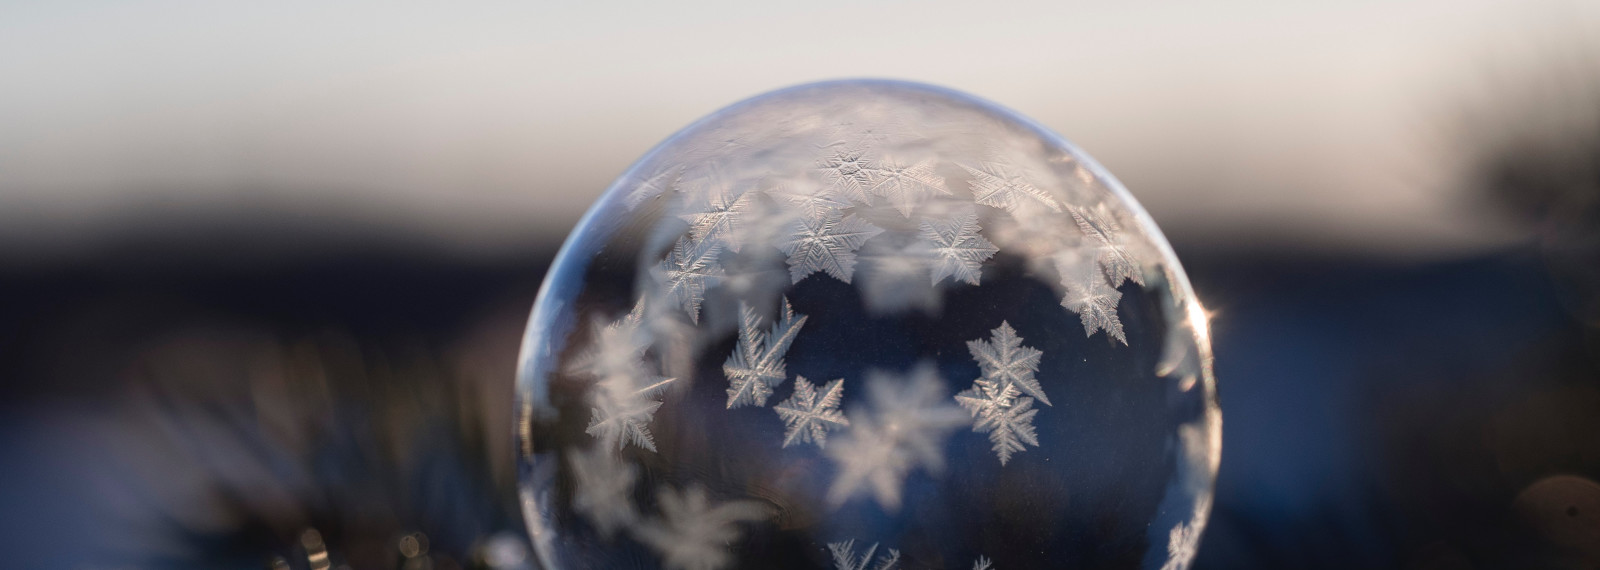 Image of a frozen bubble